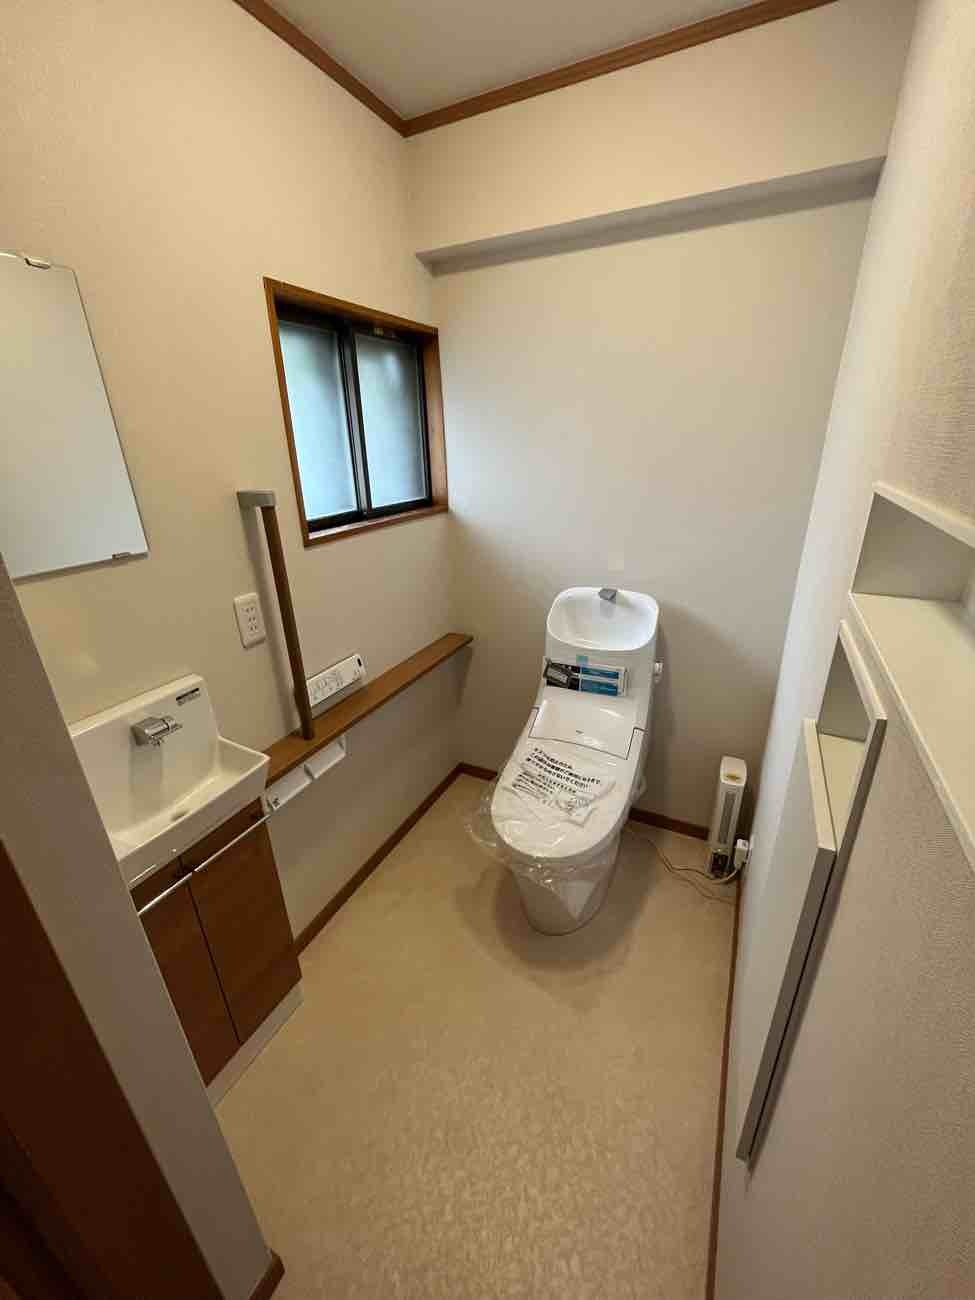 【埼玉県三郷市】C様邸トイレ改修工事が完了しました。リクシル アメージュZA 画像